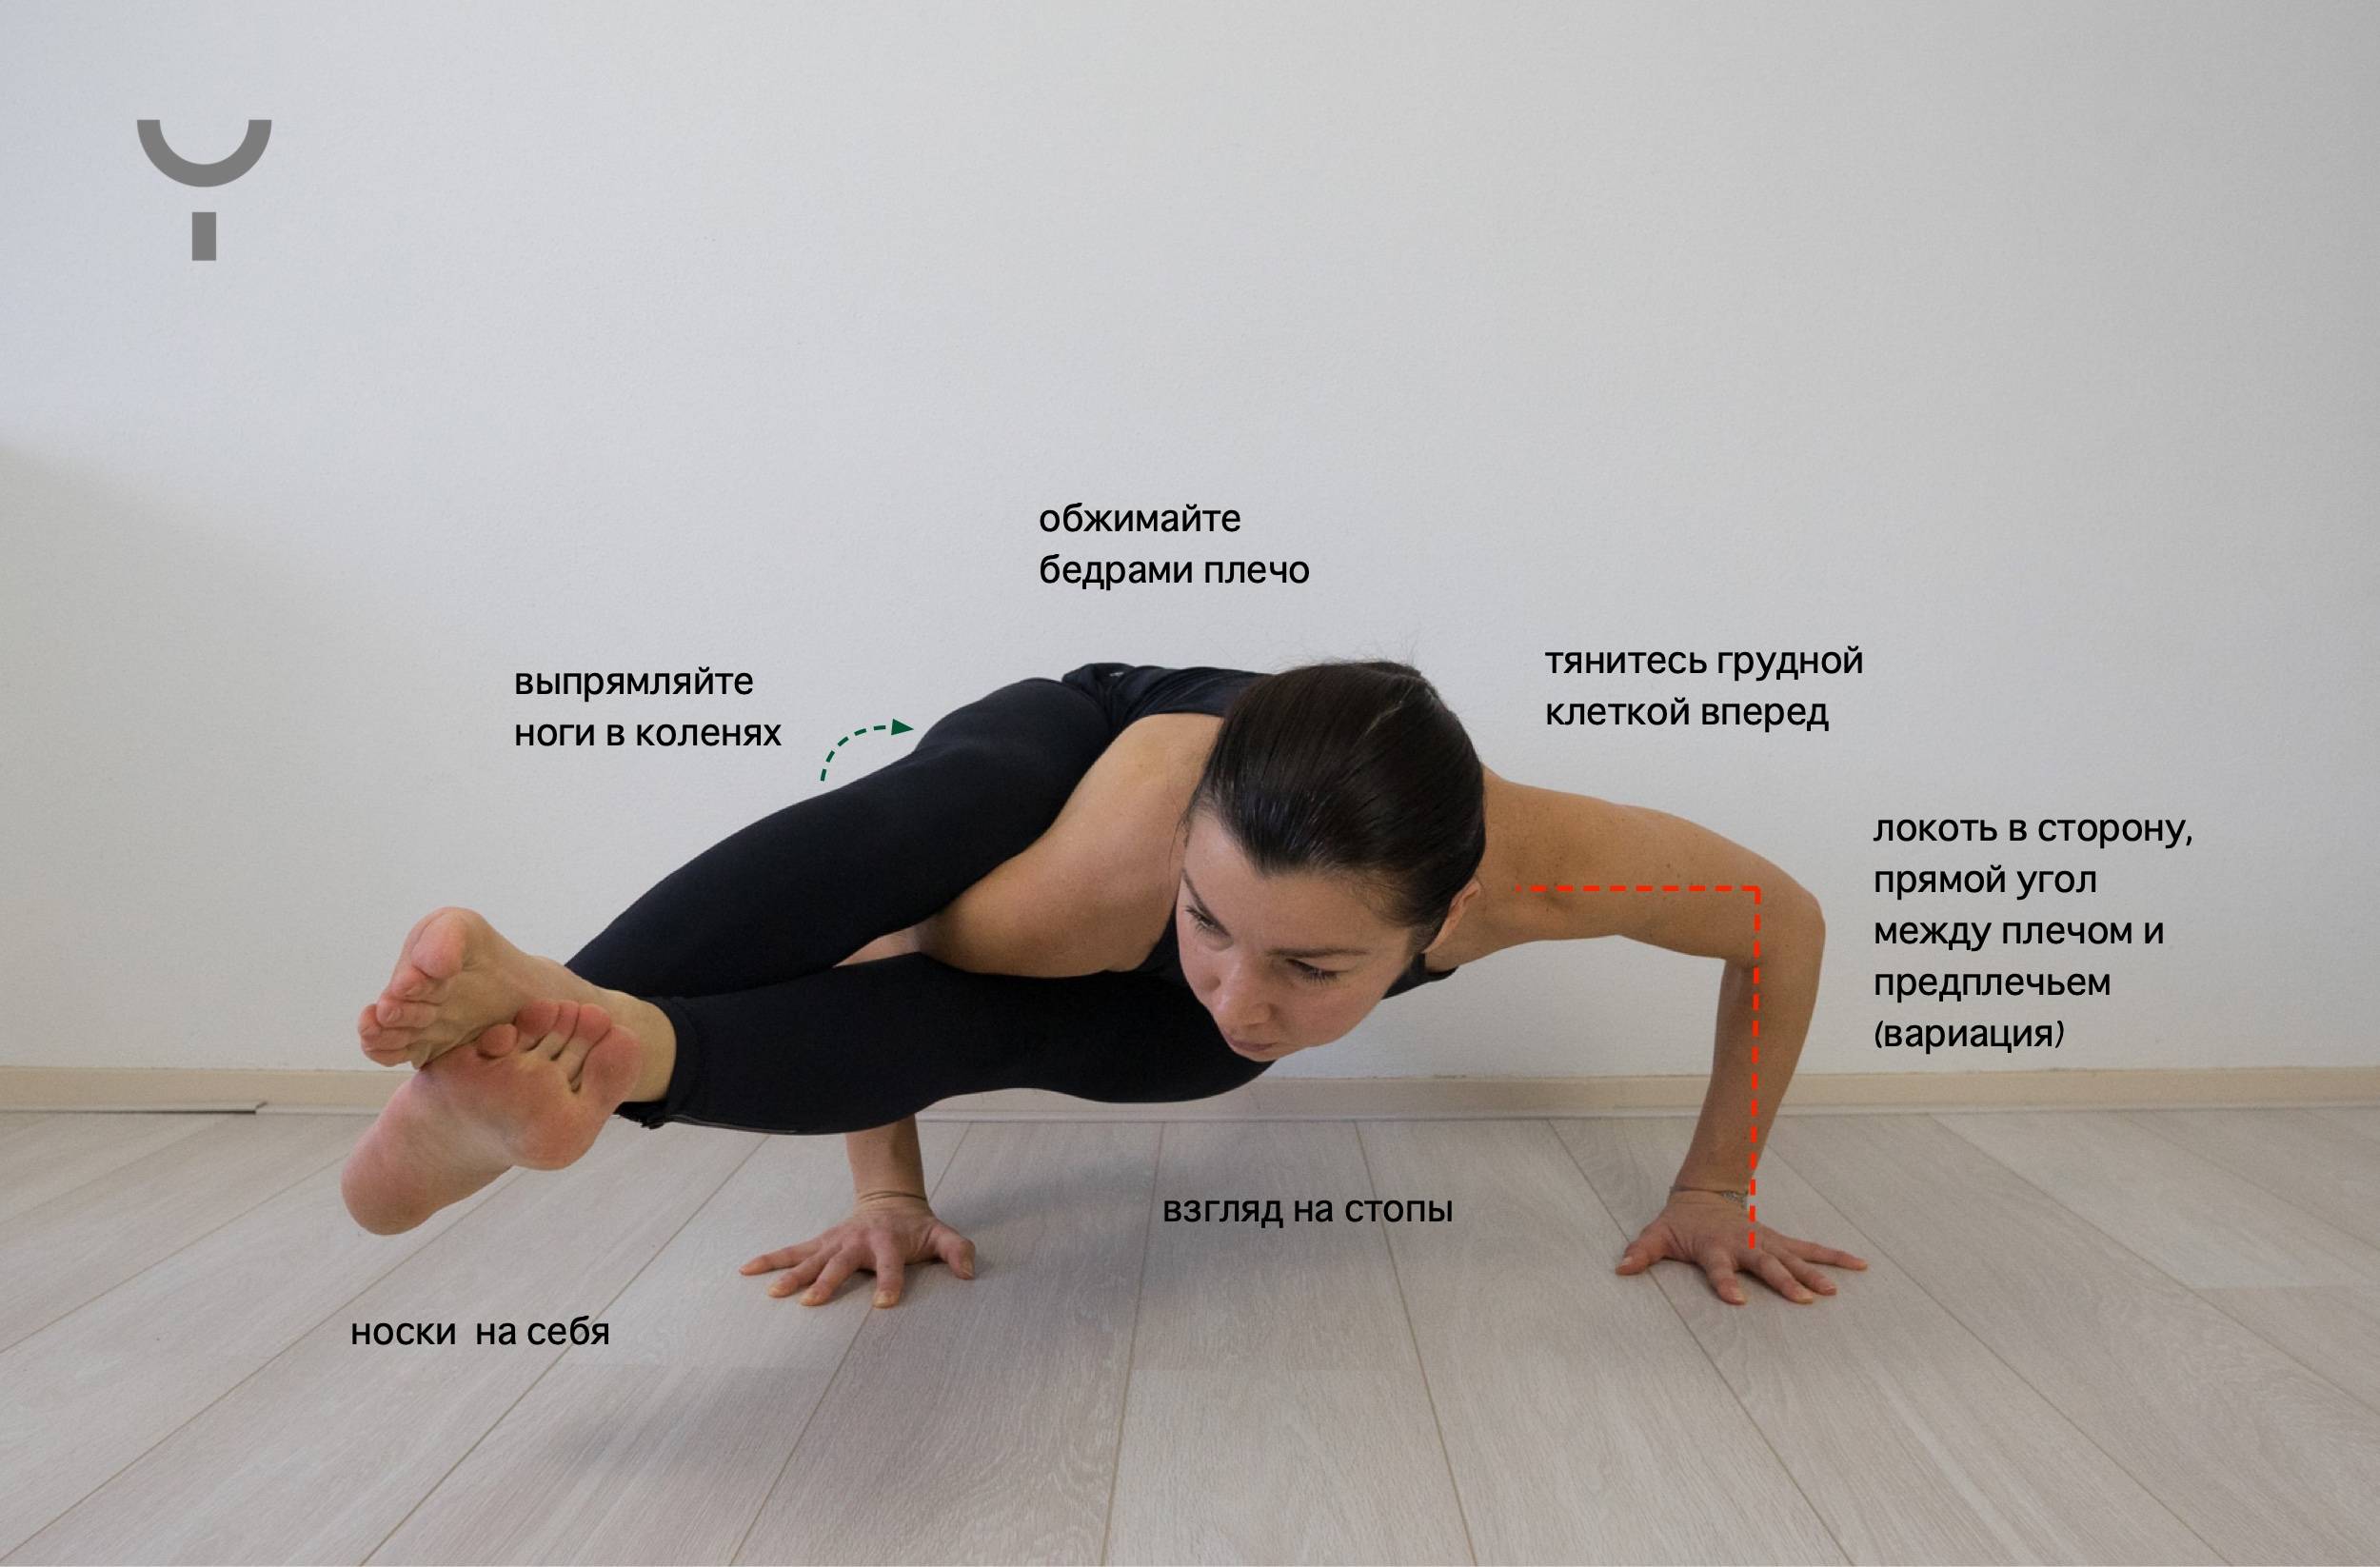 Бакасана (поза журавля) в йоге: правильная техника выполнения асаны, а также польза и противопоказания (с фото)